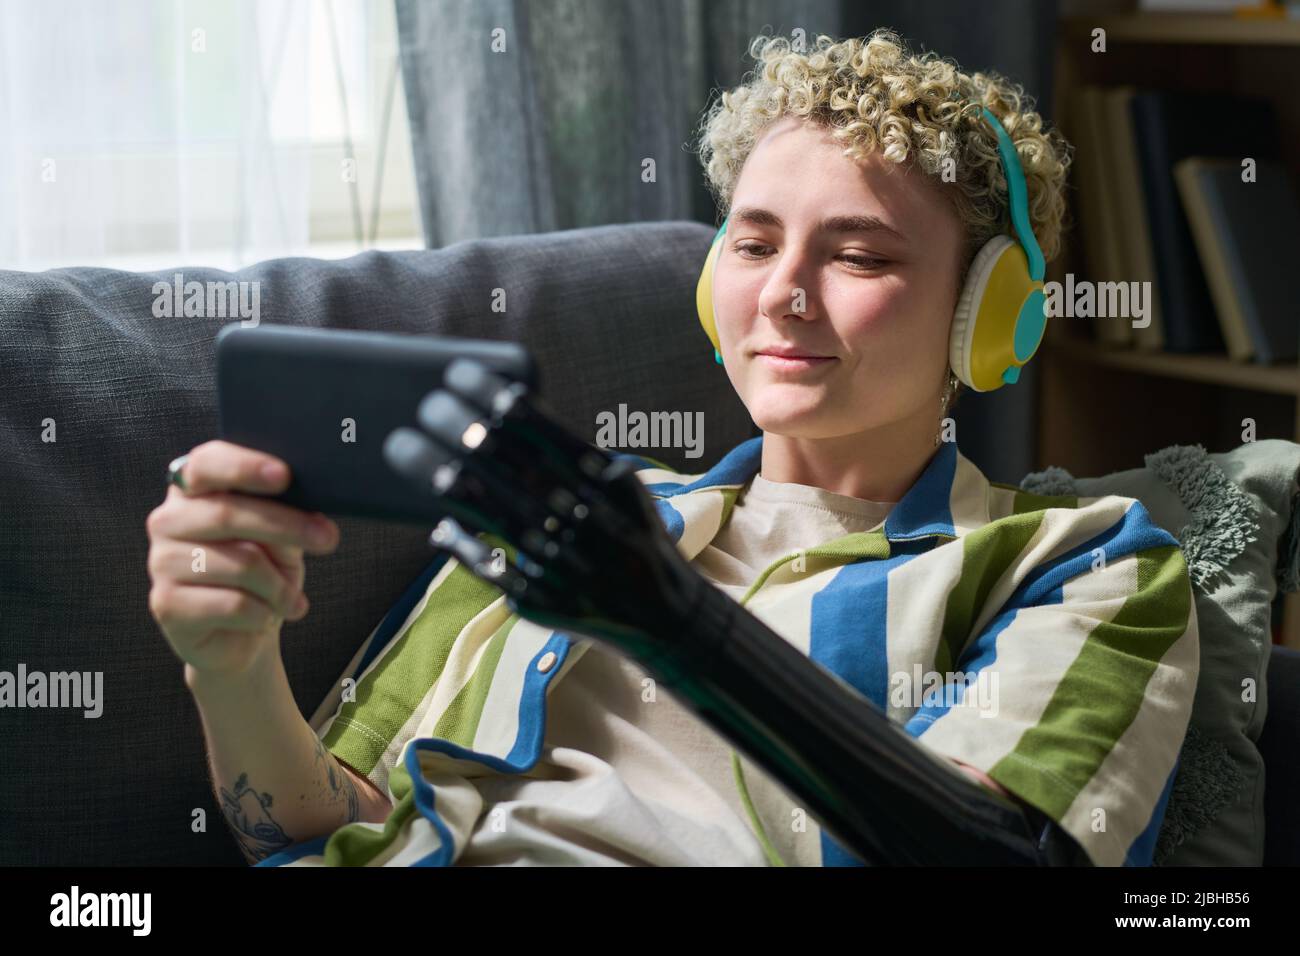 Glückliches Mädchen mit myoelektrischem Arm, das Online-Film auf dem Smartphone sieht, während es sich auf dem Sofa im Wohnzimmer entspannt Stockfoto